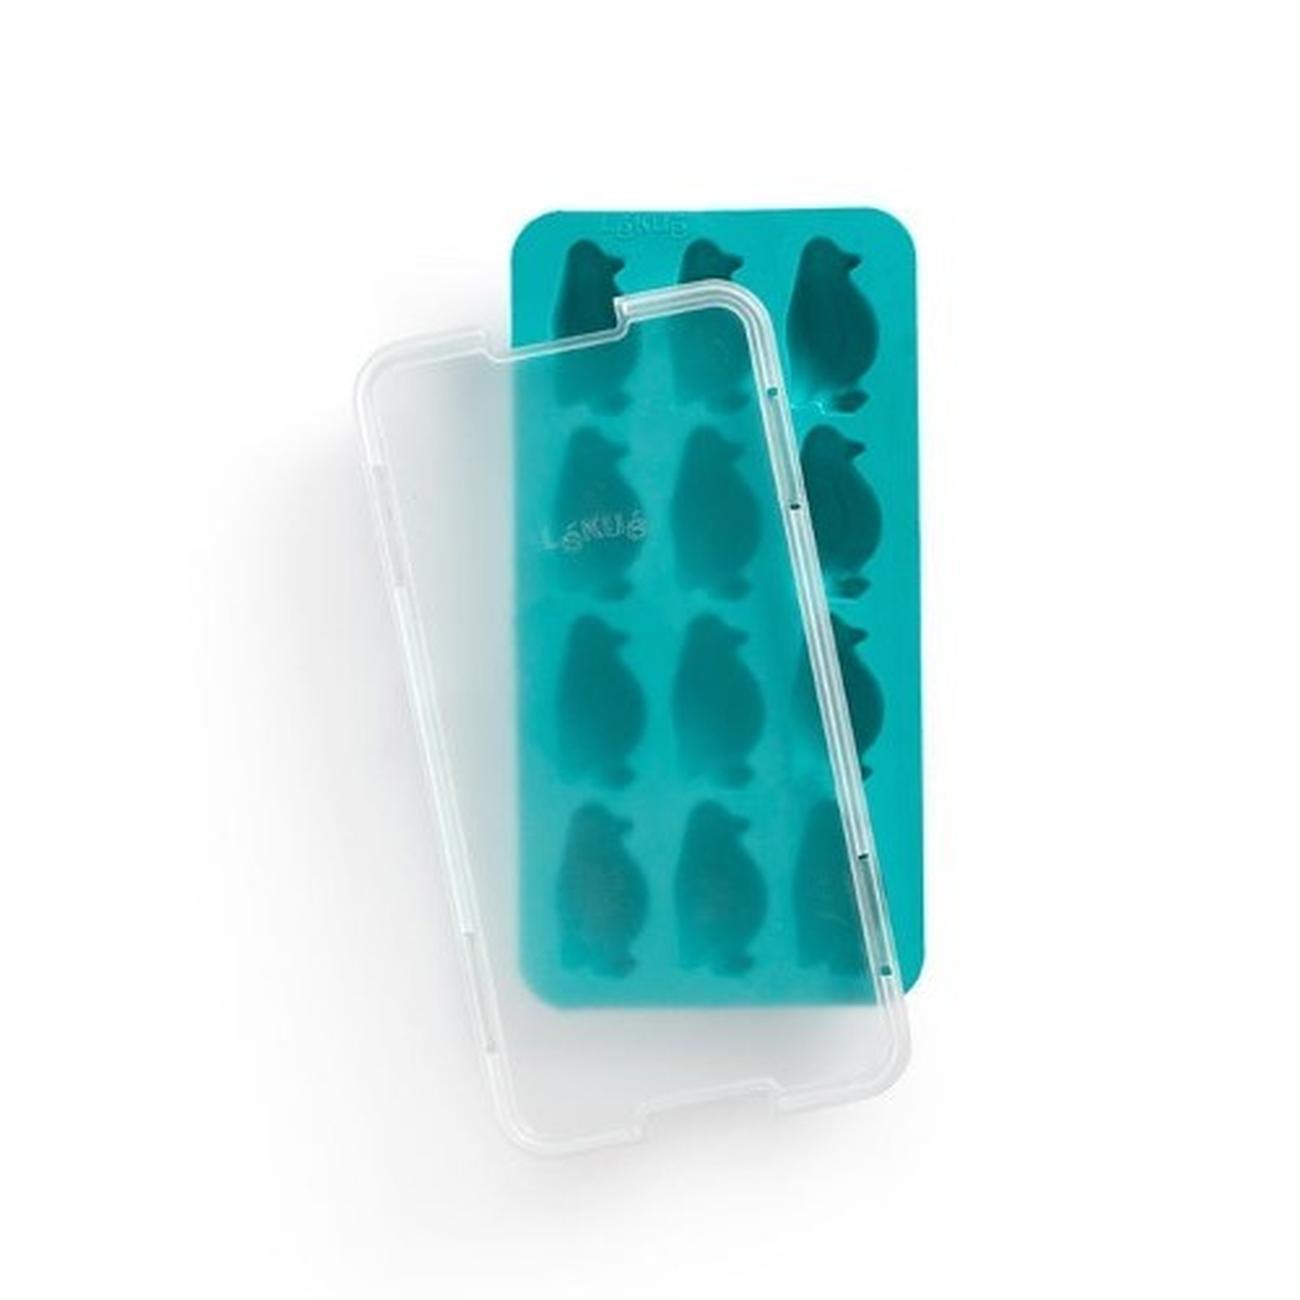 lekue-penguin-ice-cube-tray-turquoise - Lekue Penguin Ice Cube Tray Turquoise